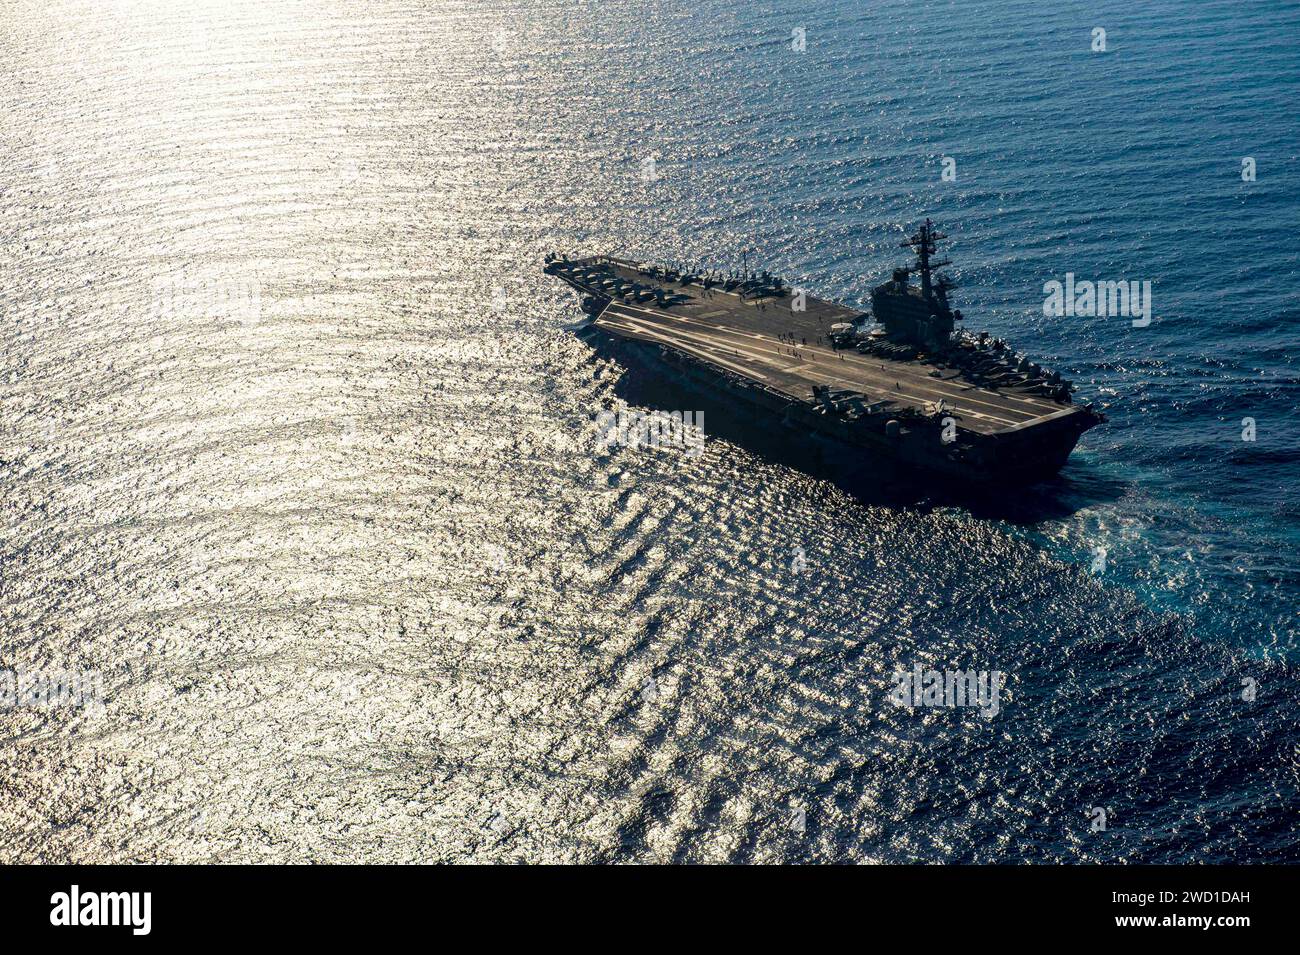 Der Flugzeugträger USS George H.W. Bush durchquert das Mittelmeer. Stockfoto